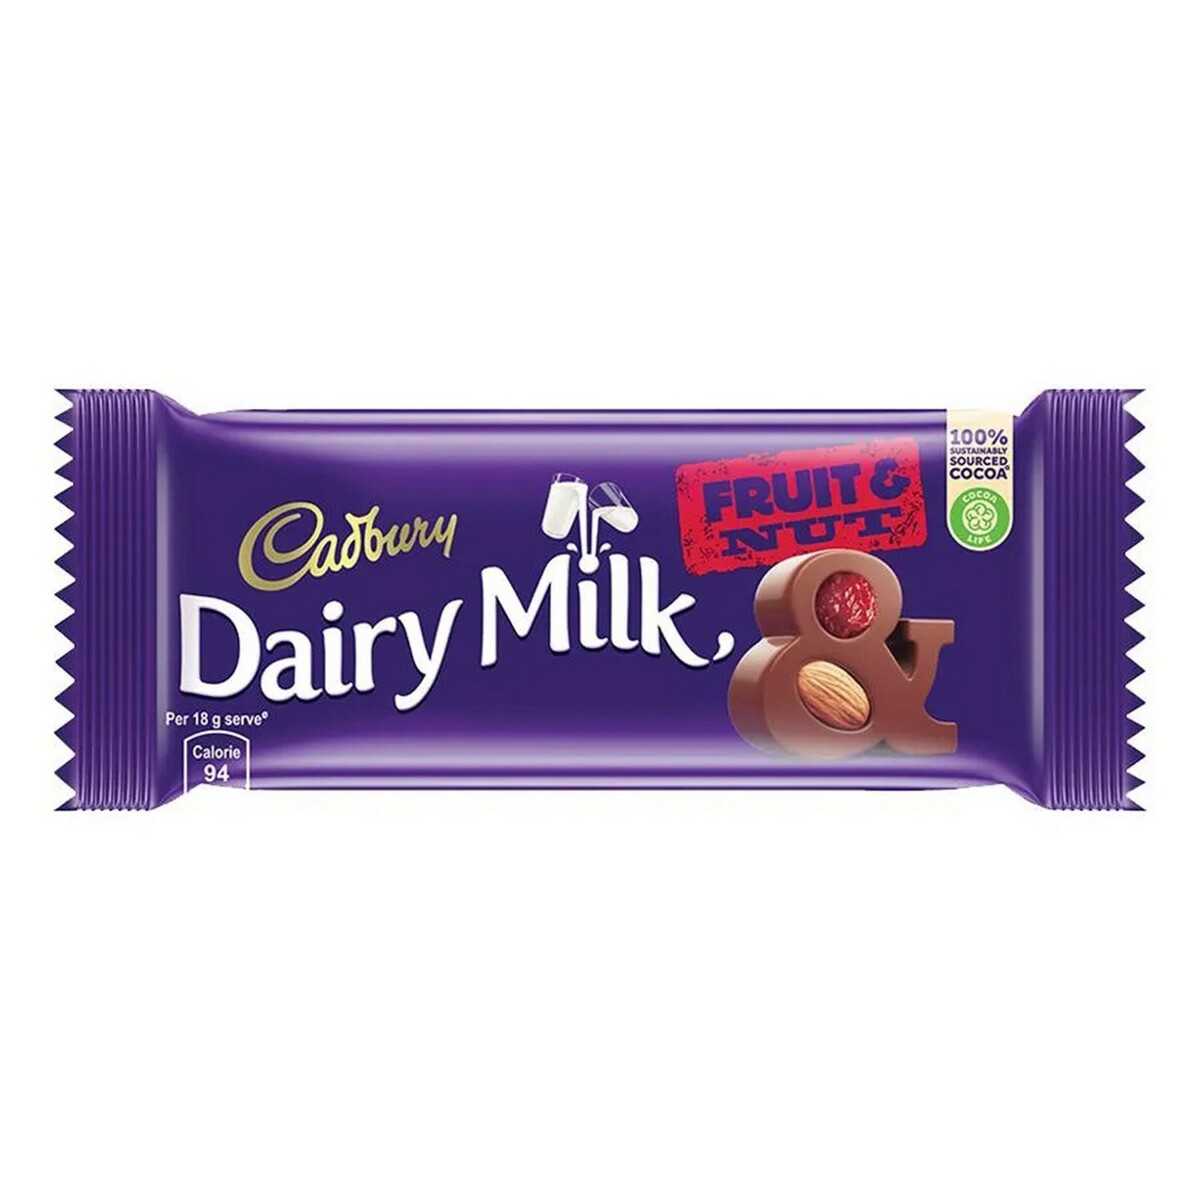 Cadbury Dairy Milk Fruit & Nut 36g